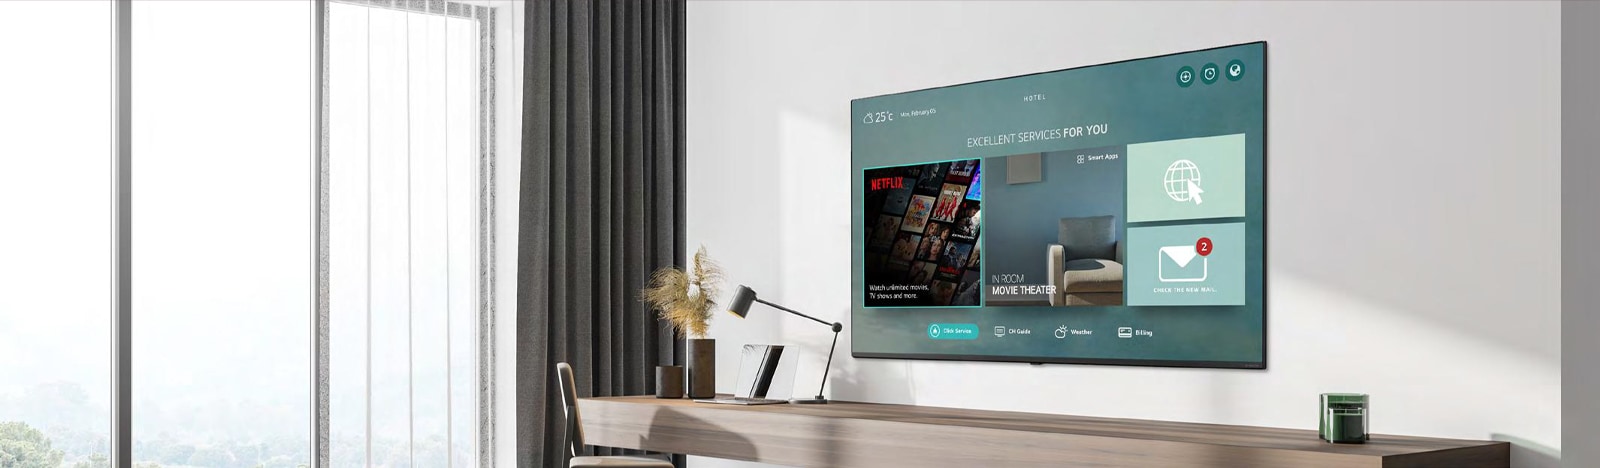 Treść hotelowa, w tym aplikacja Netflix, jest pokazana na telewizorze w pokoju hotelowym.